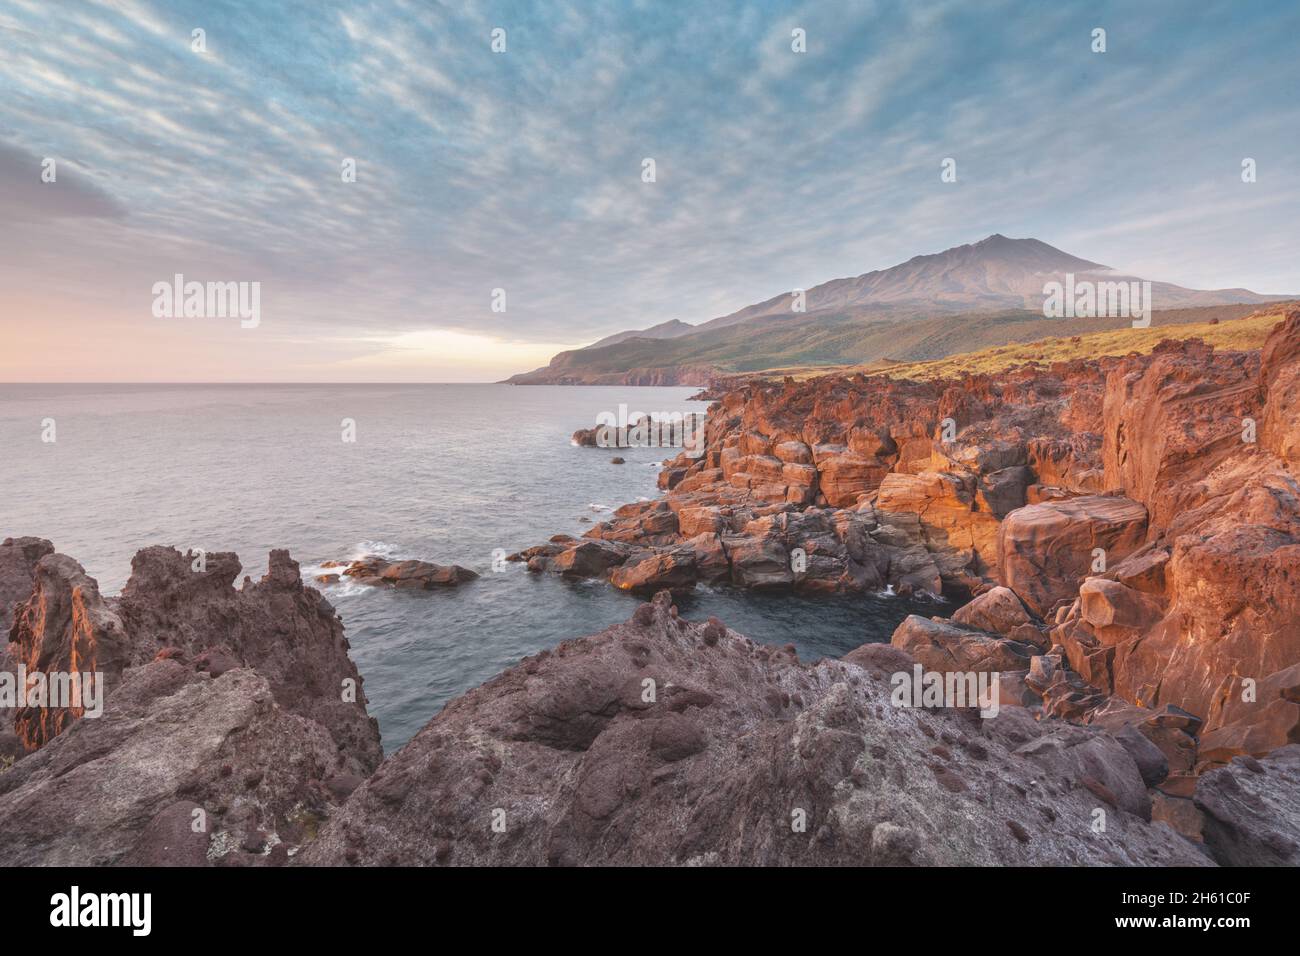 Russia, the Kuril Islands, Iturup Island, sunset near the Yankito lava plateau on the Pacific coast. Stock Photo